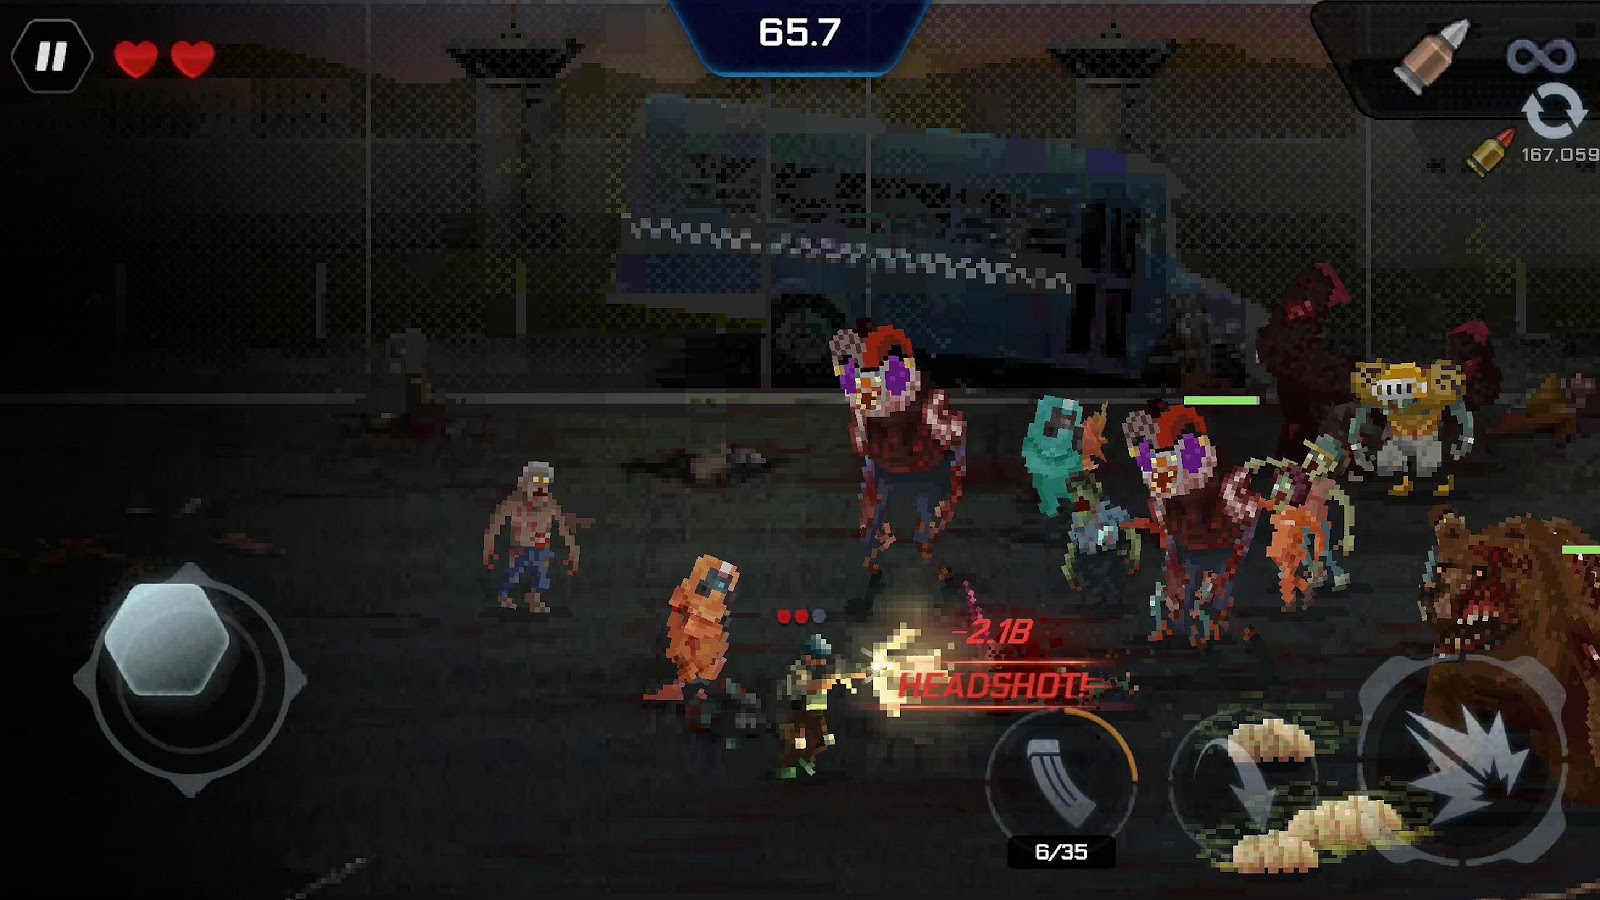 Headshot ZD : Survivors vs Zombie Doomsday (Mod)